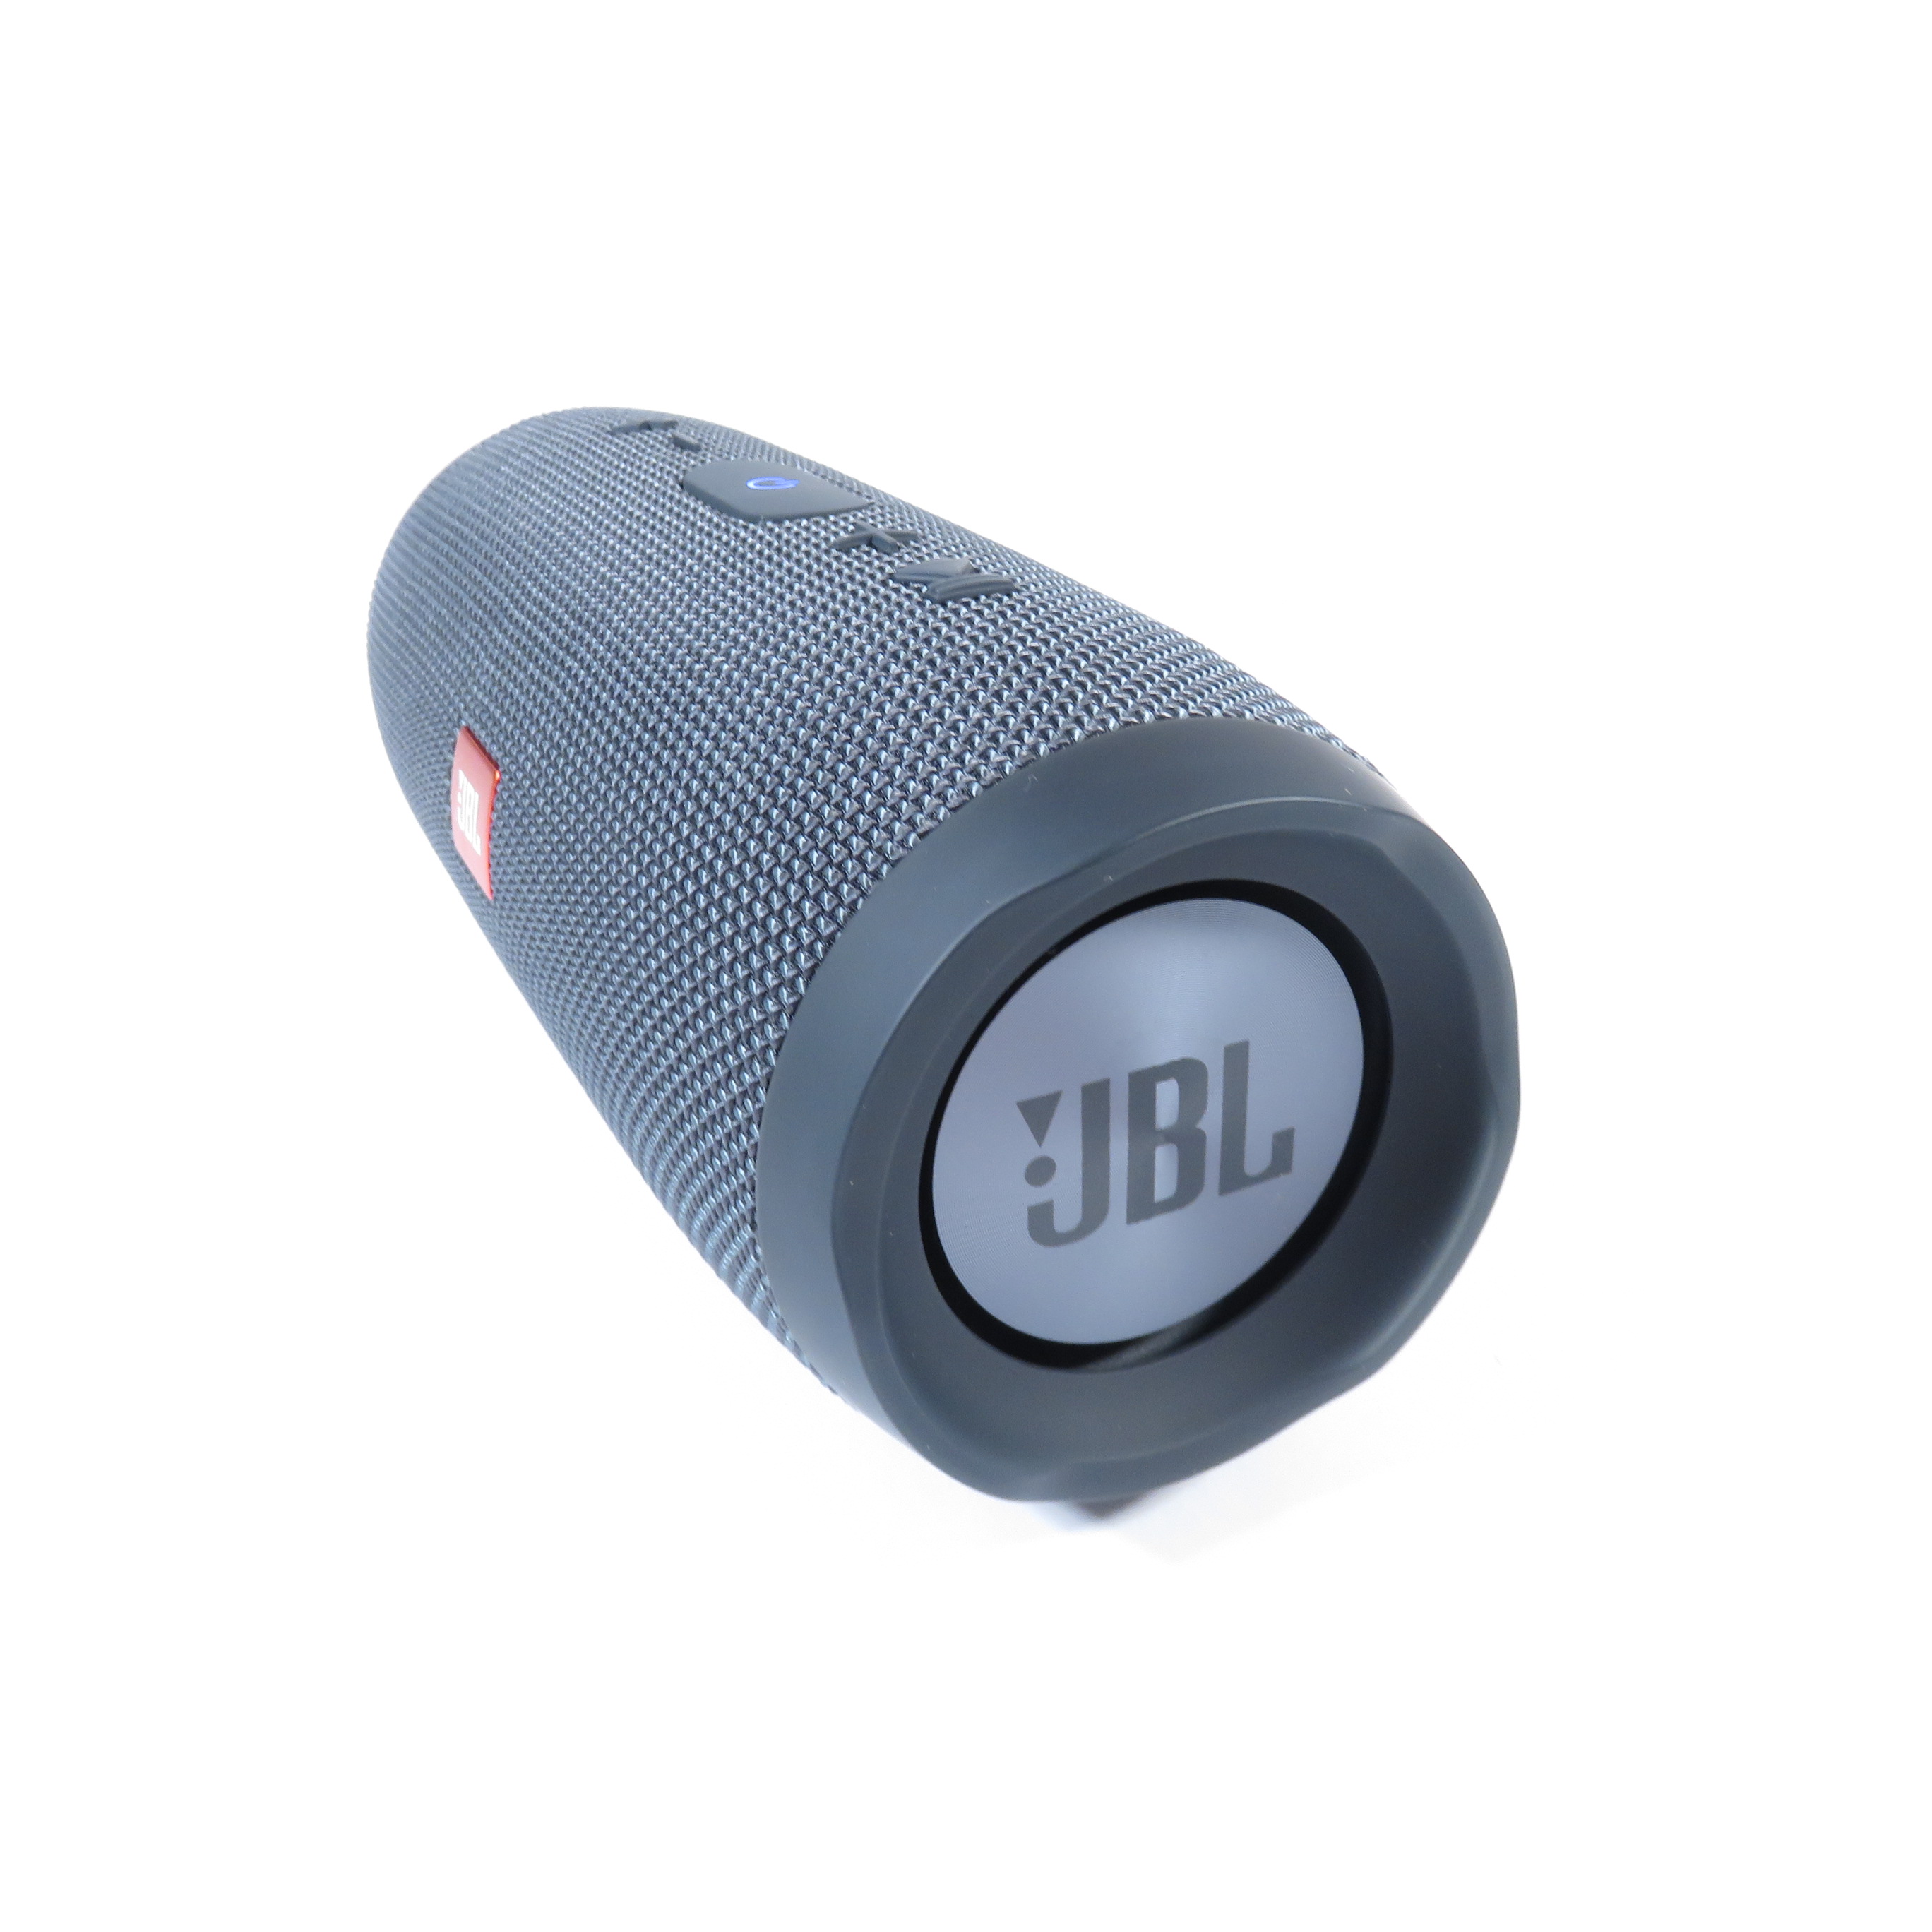 JBL Charge Essential Portable Bluetooth Speaker w/ IPX7 Waterproof